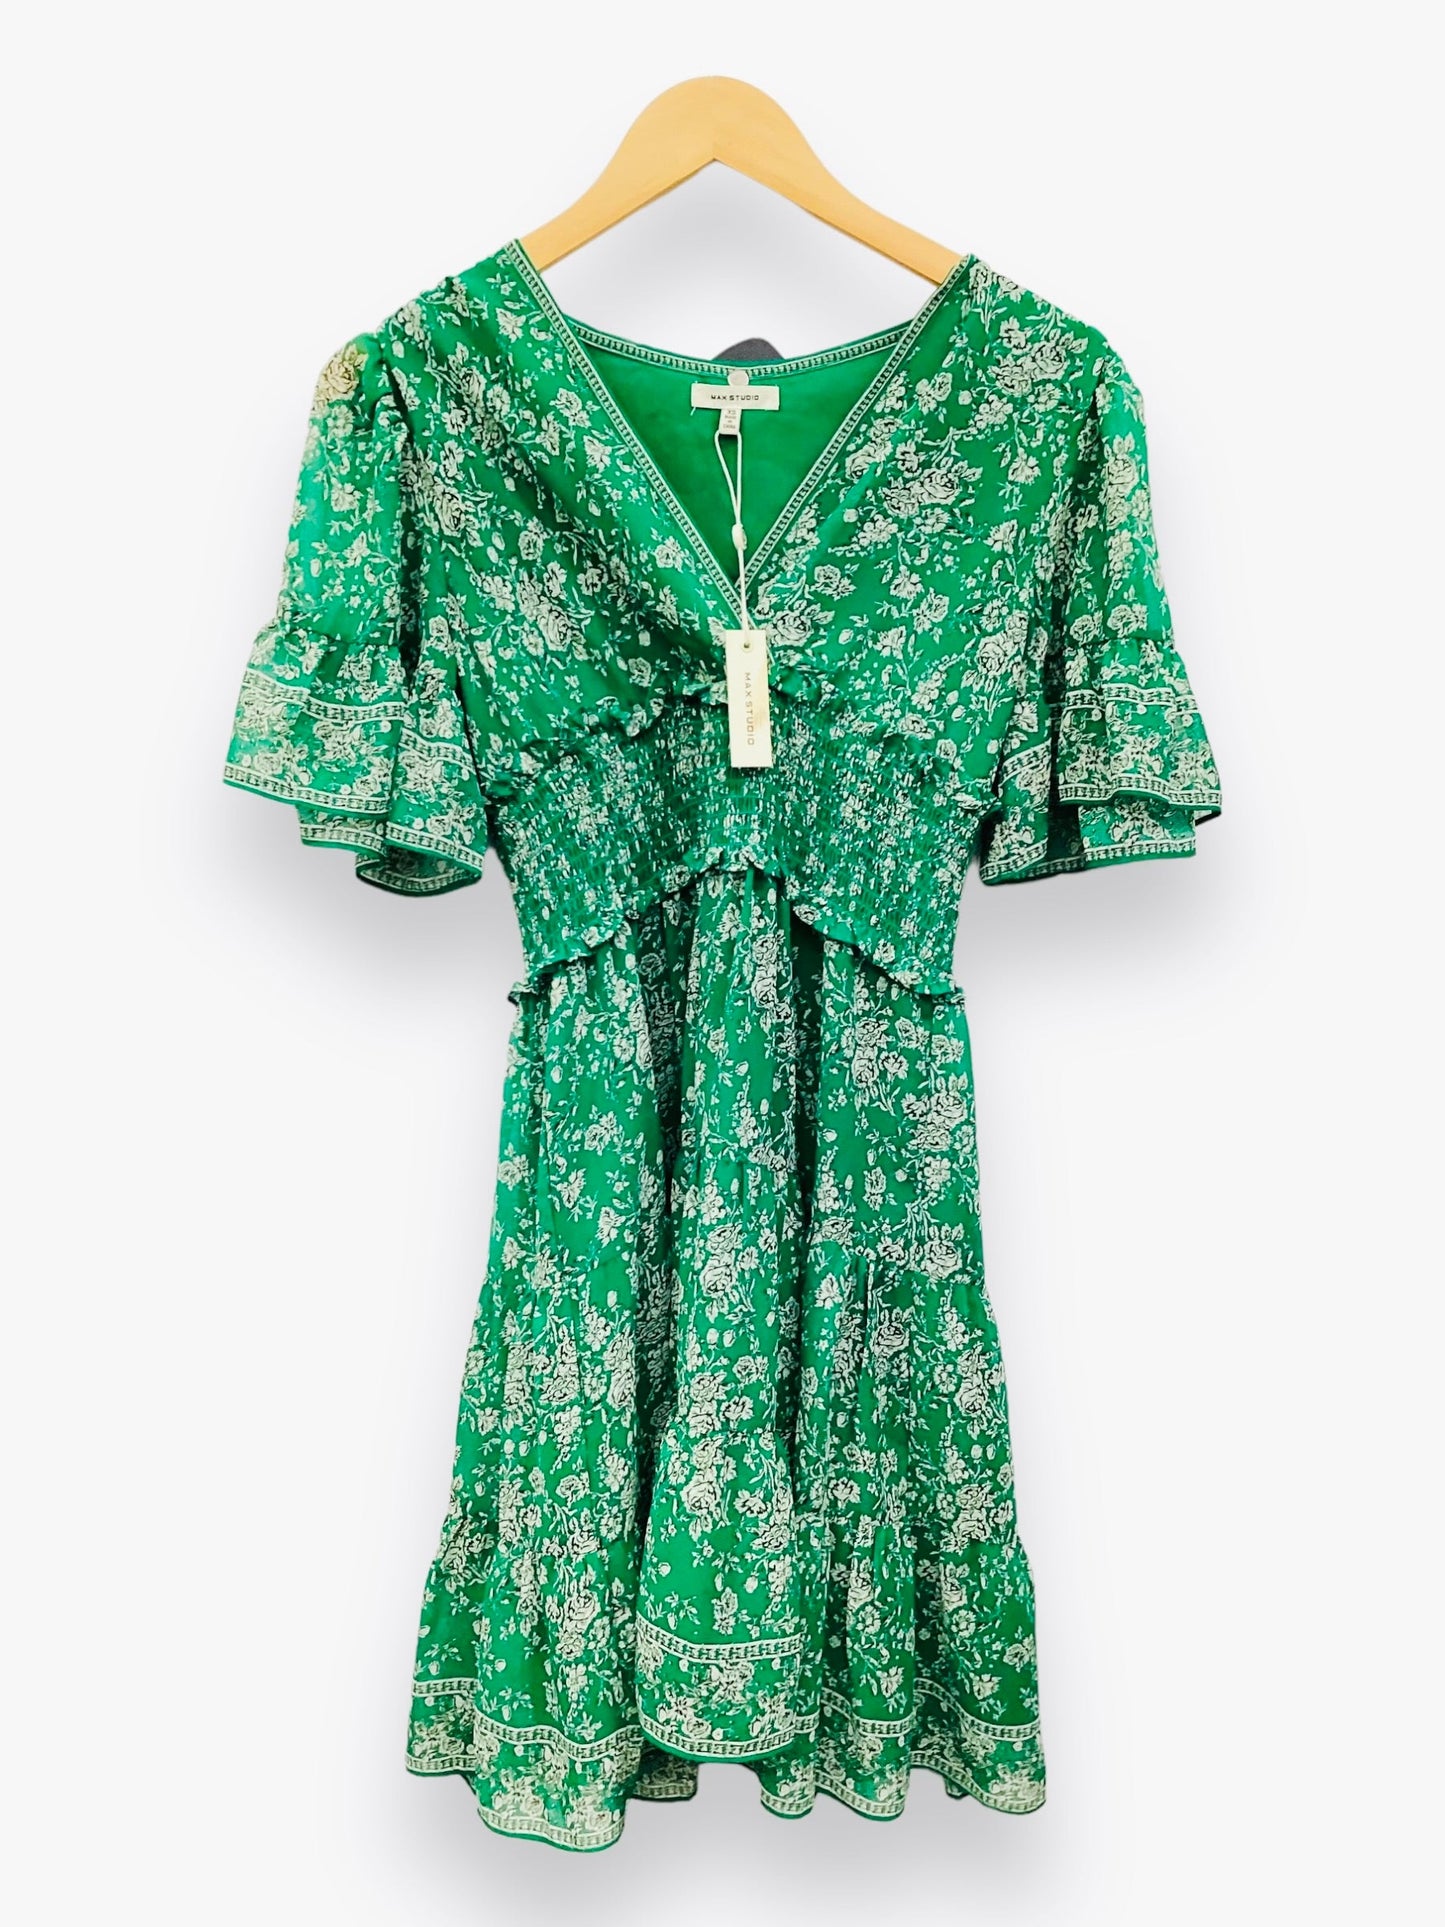 NWT Green Dress Casual Midi Max Studio, Size Xs